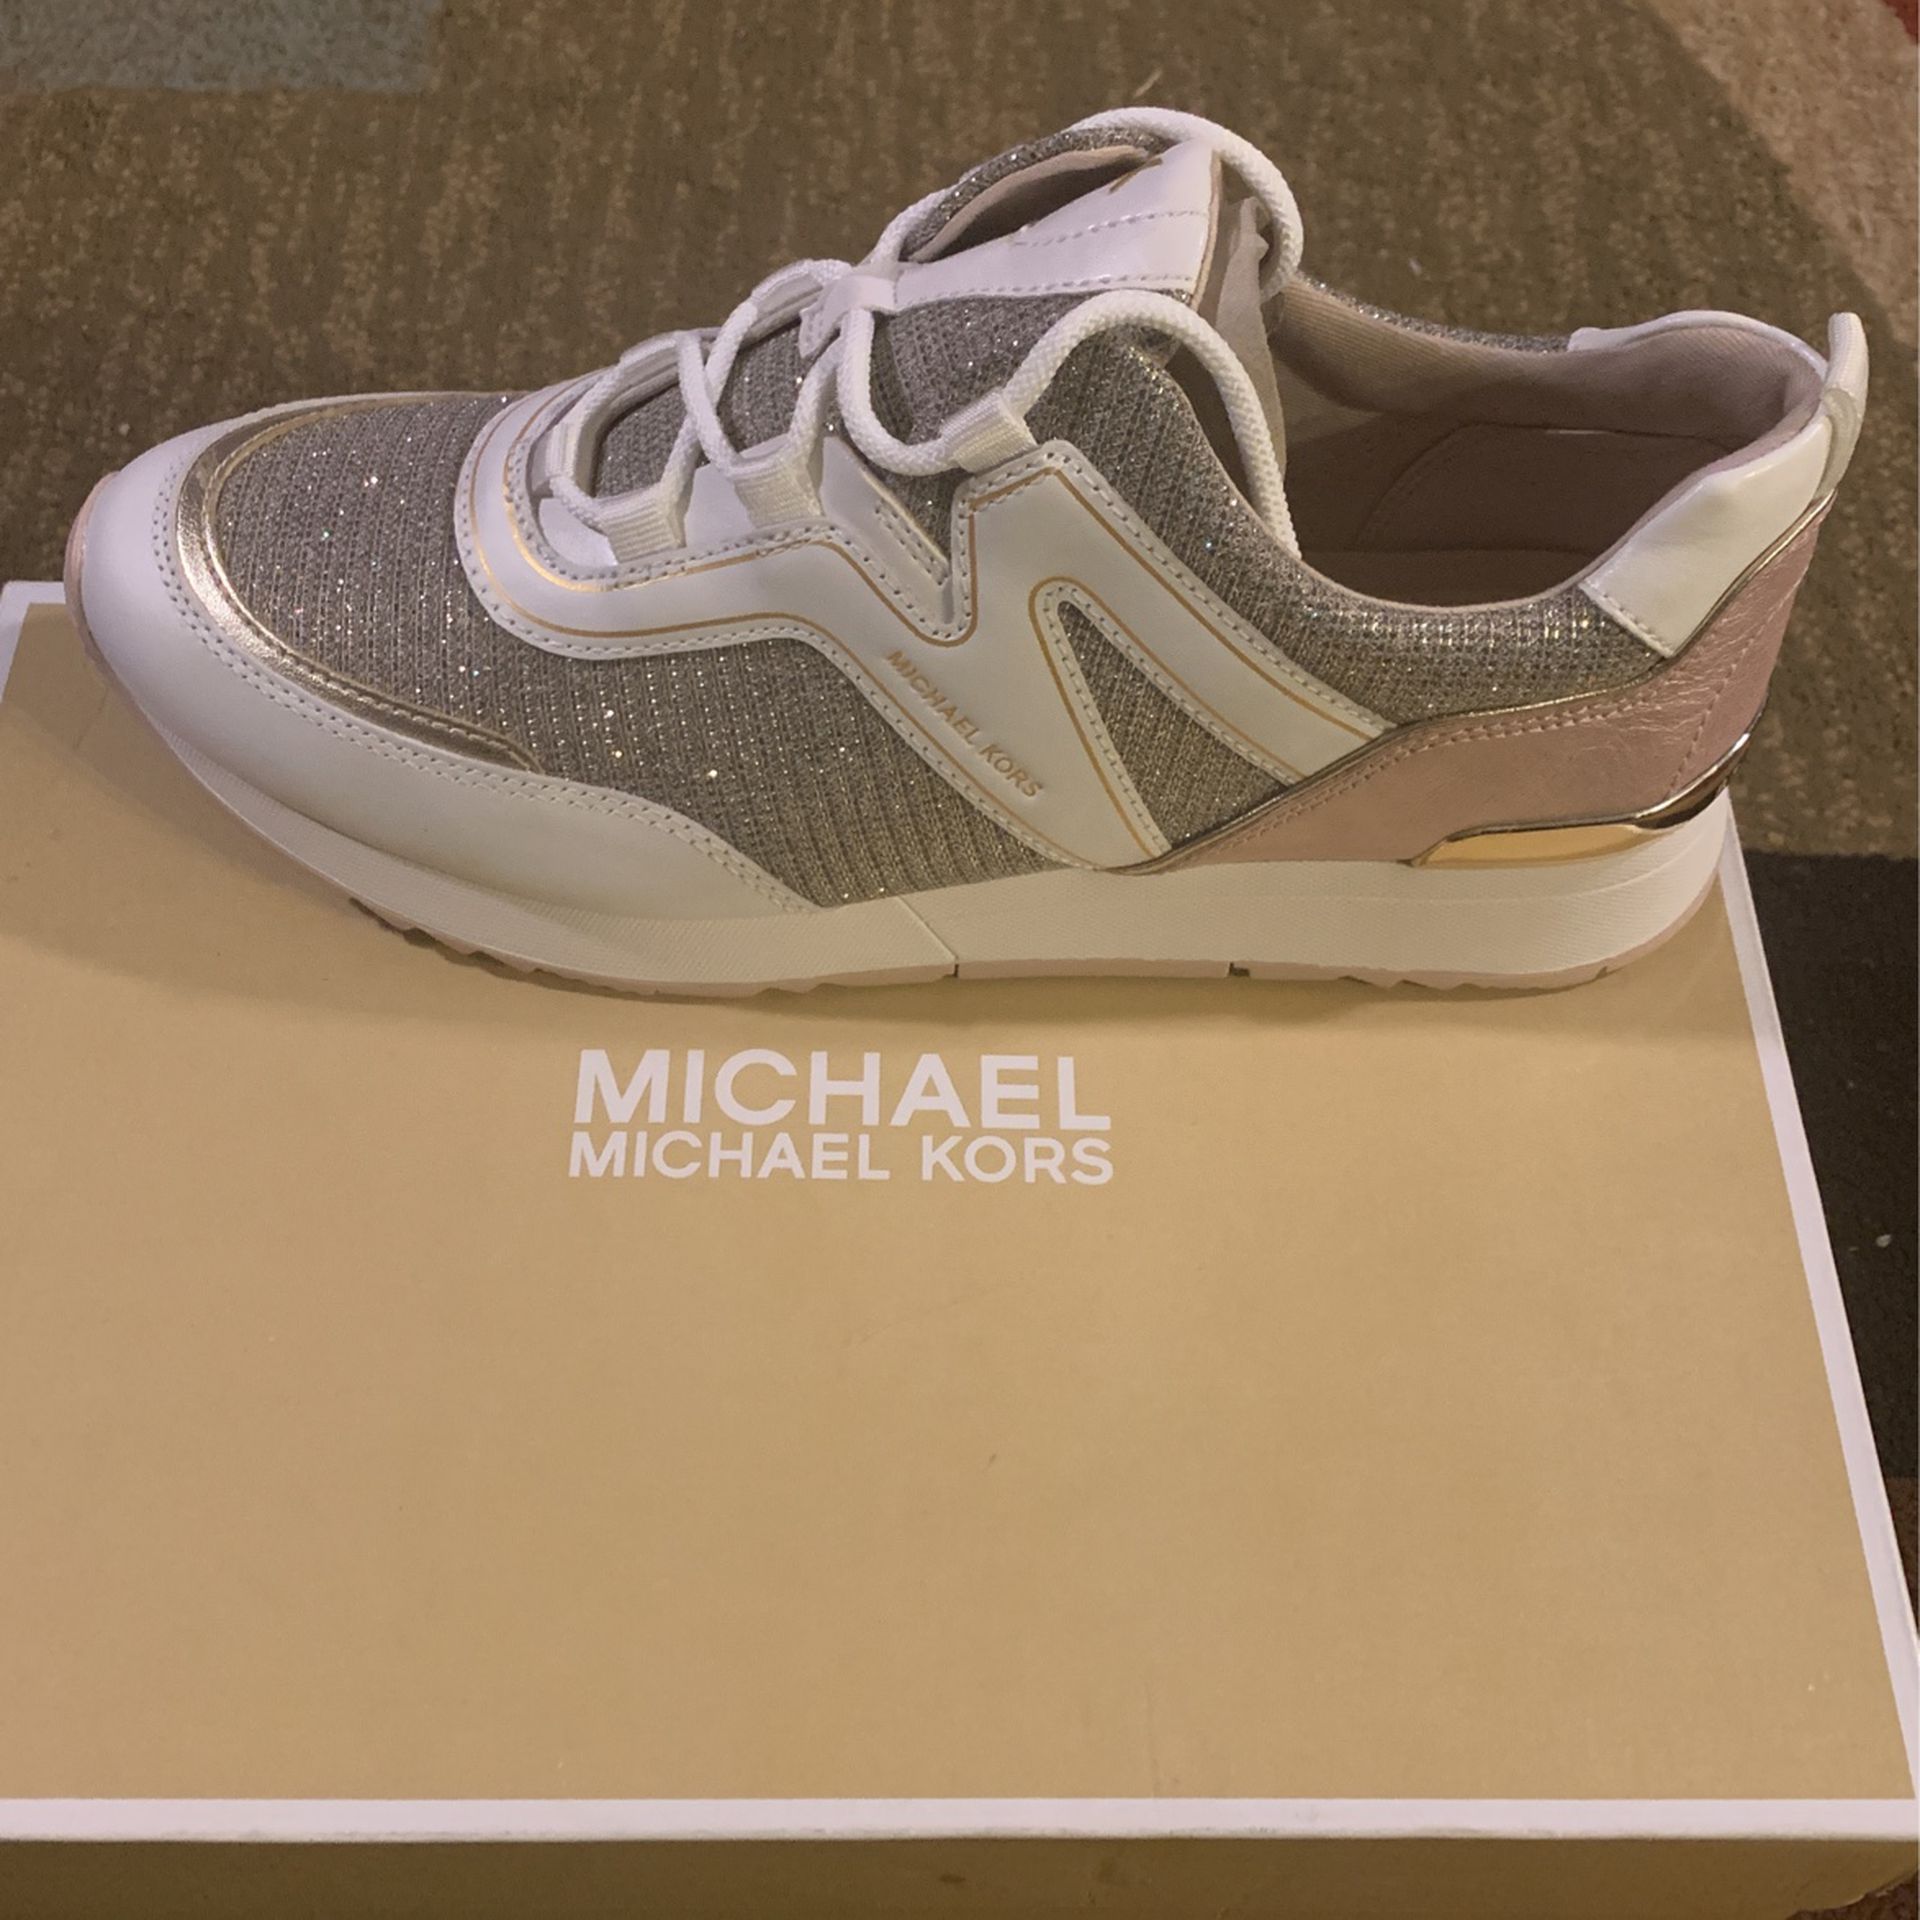 Indvandring Hubert Hudson Kamel New Michael Kors Shoes for Sale in Charlotte, NC - OfferUp